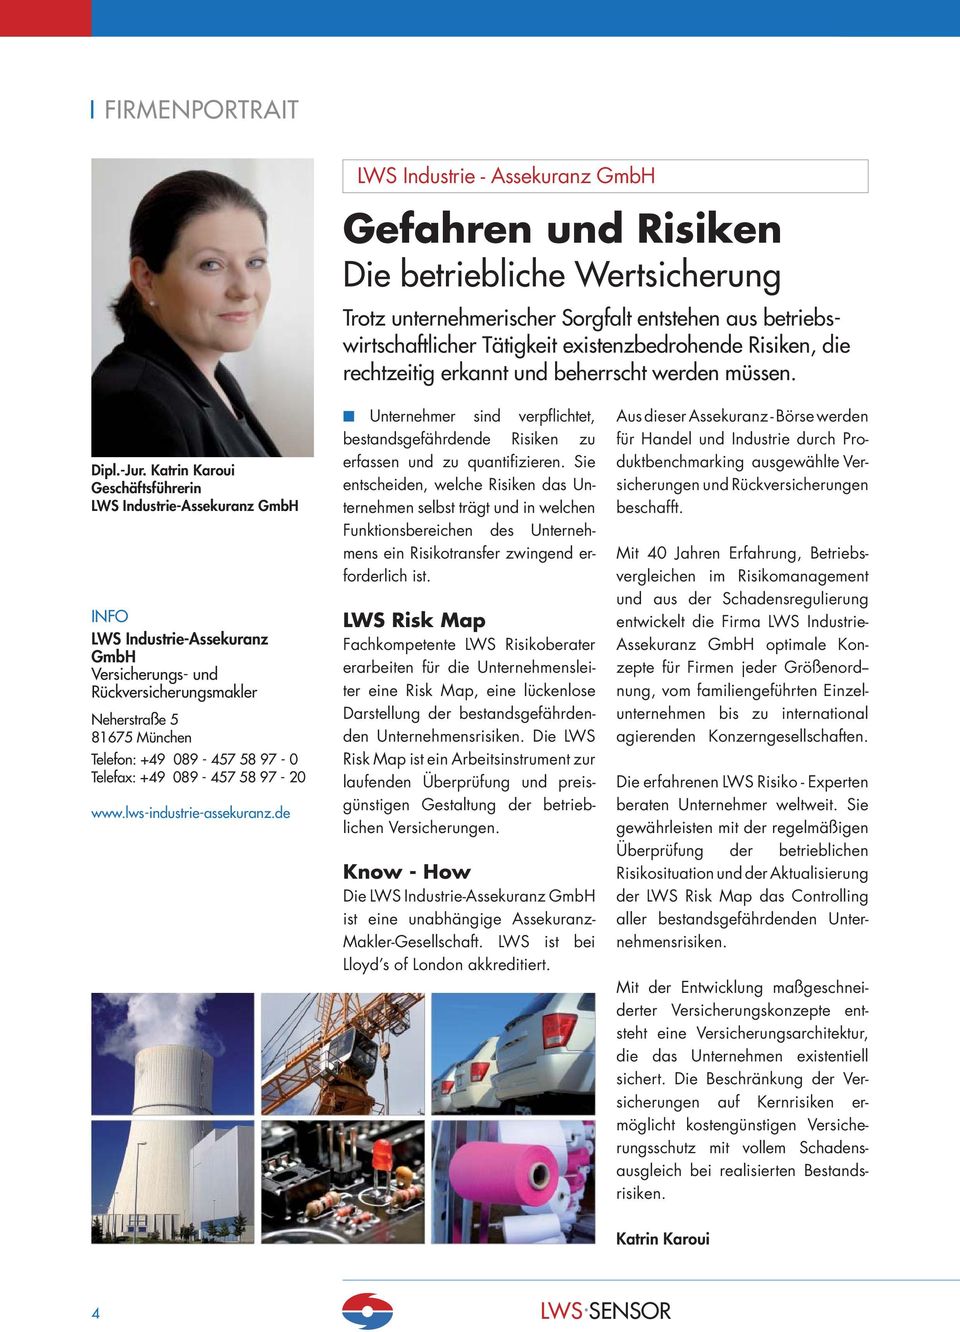 Katrin Karoui Geschäftsführerin LWS Industrie-Assekuranz GmbH LWS Industrie-Assekuranz GmbH Versicherungs- und Rückversicherungsmakler Neherstraße 5 81675 München Telefon: +49 089-457 58 97-0